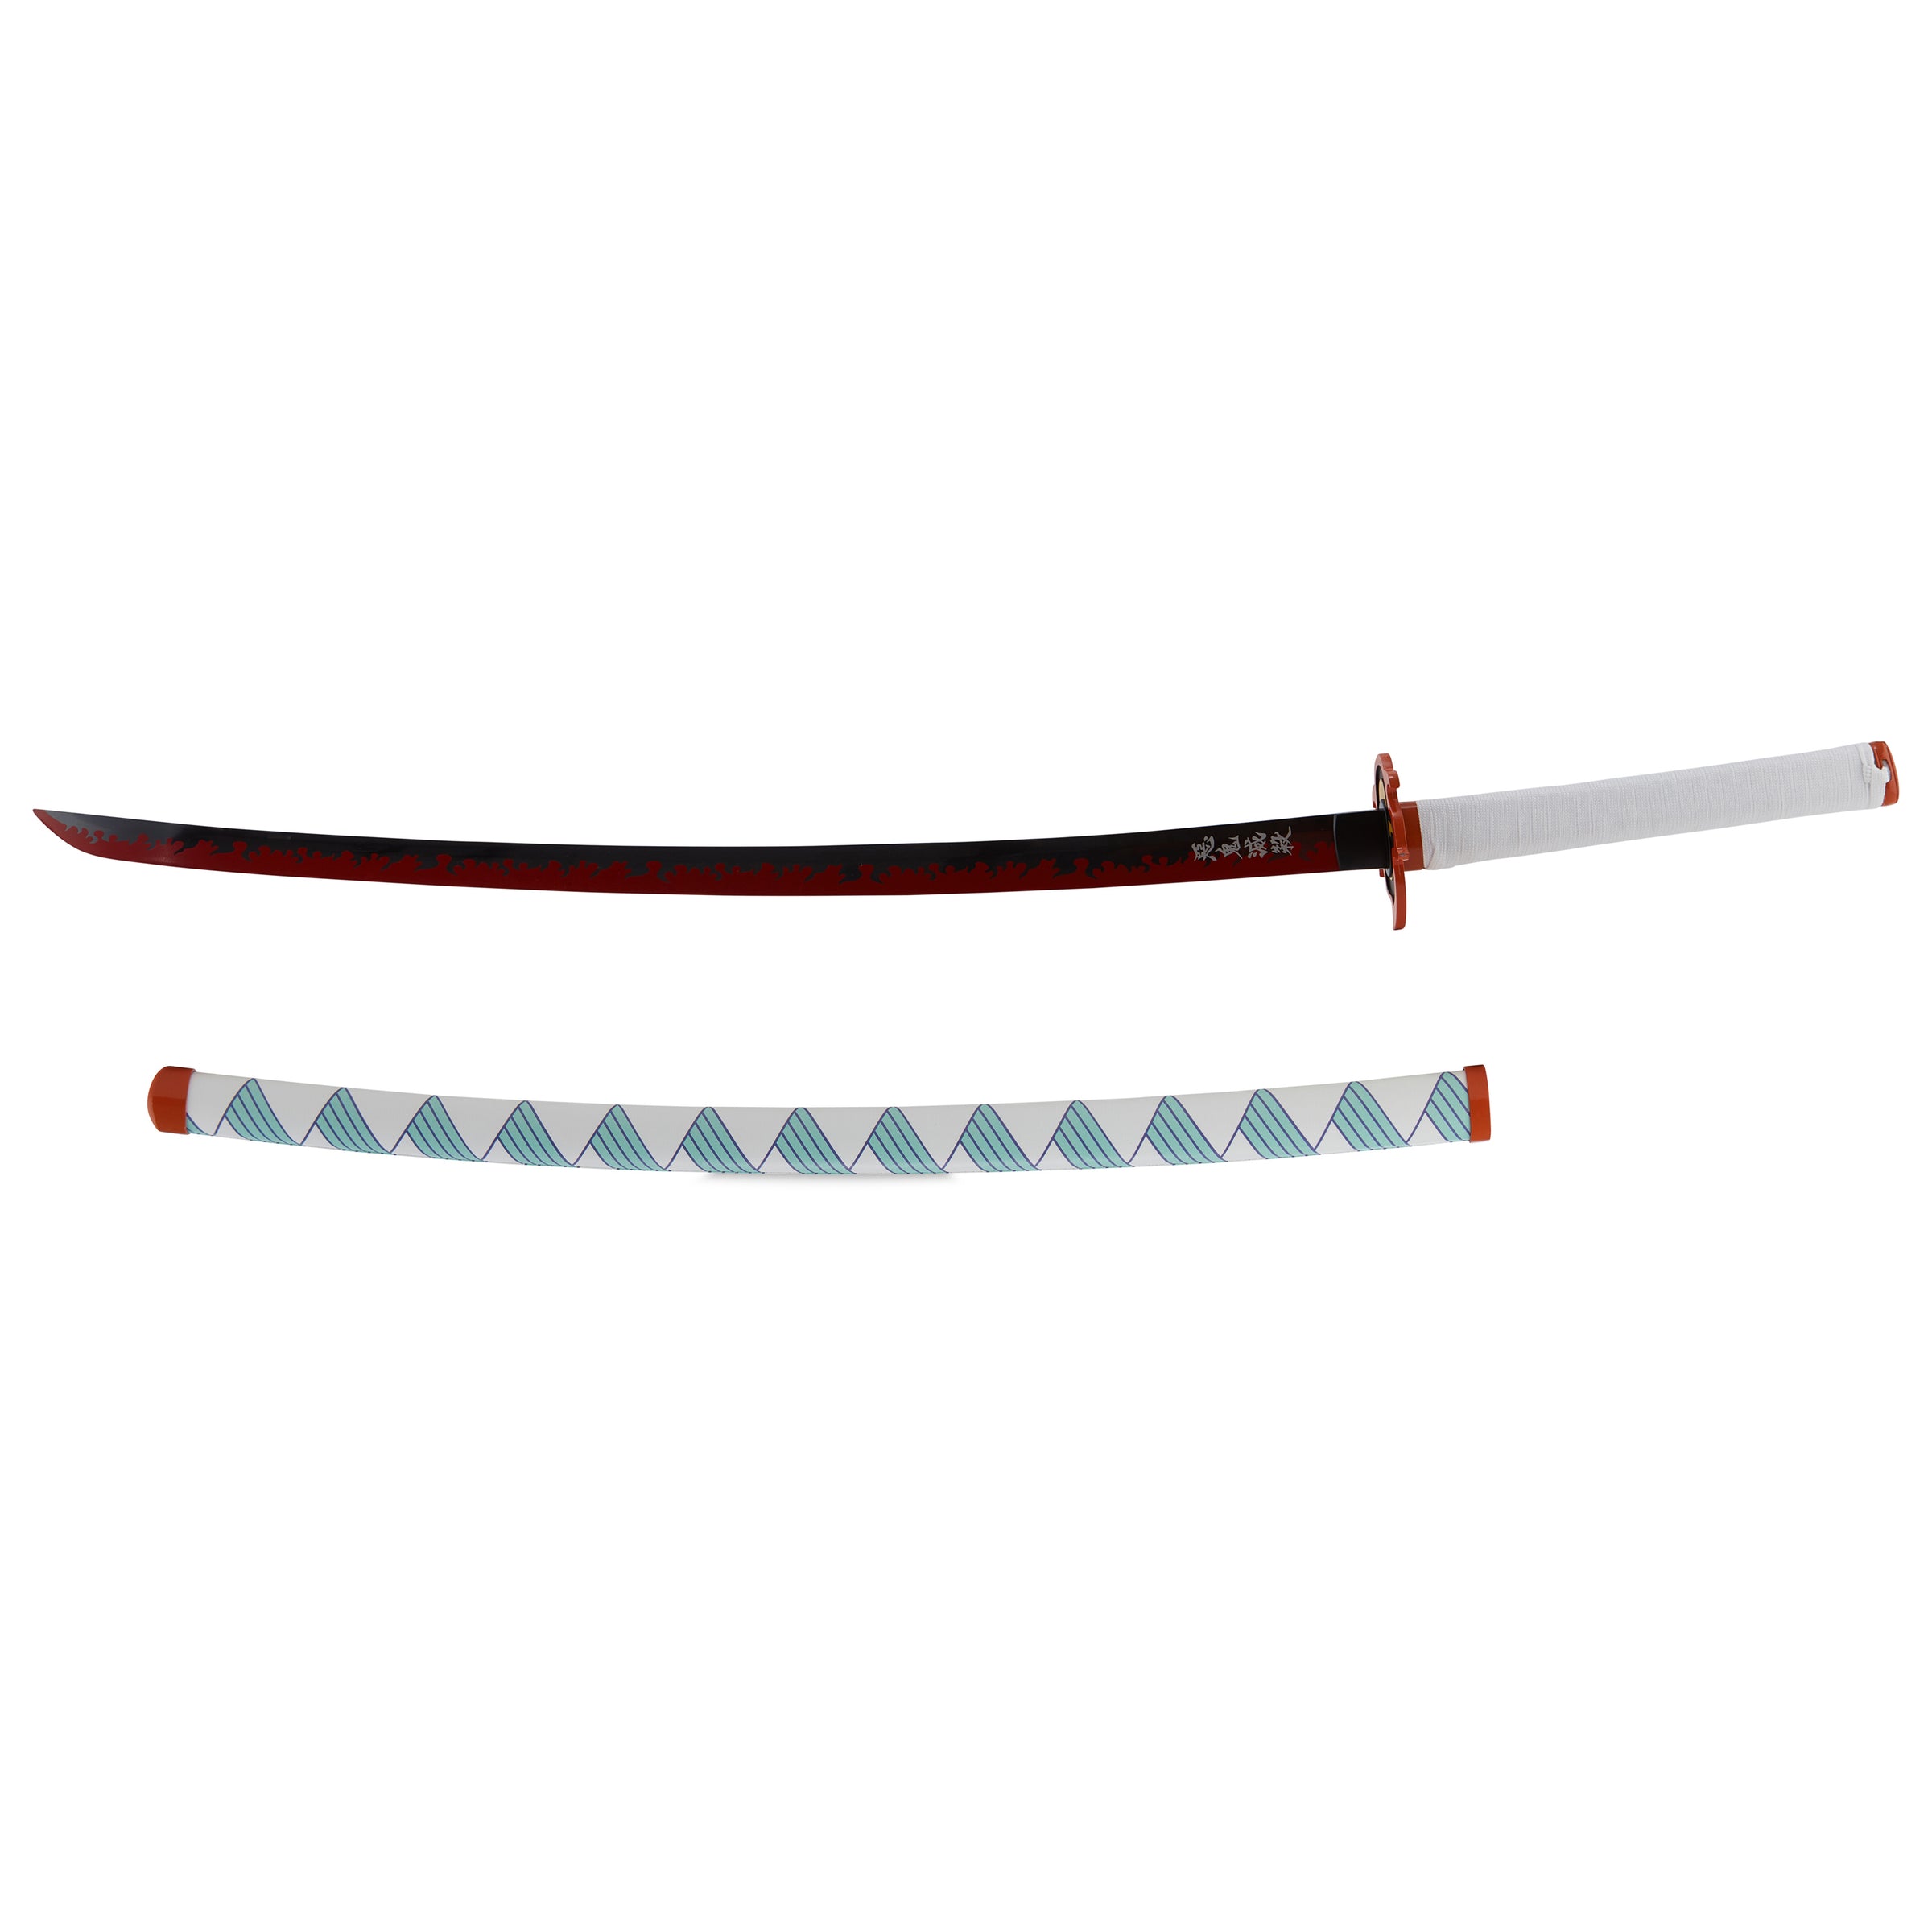 Rengoku Sword from Demon Slayer